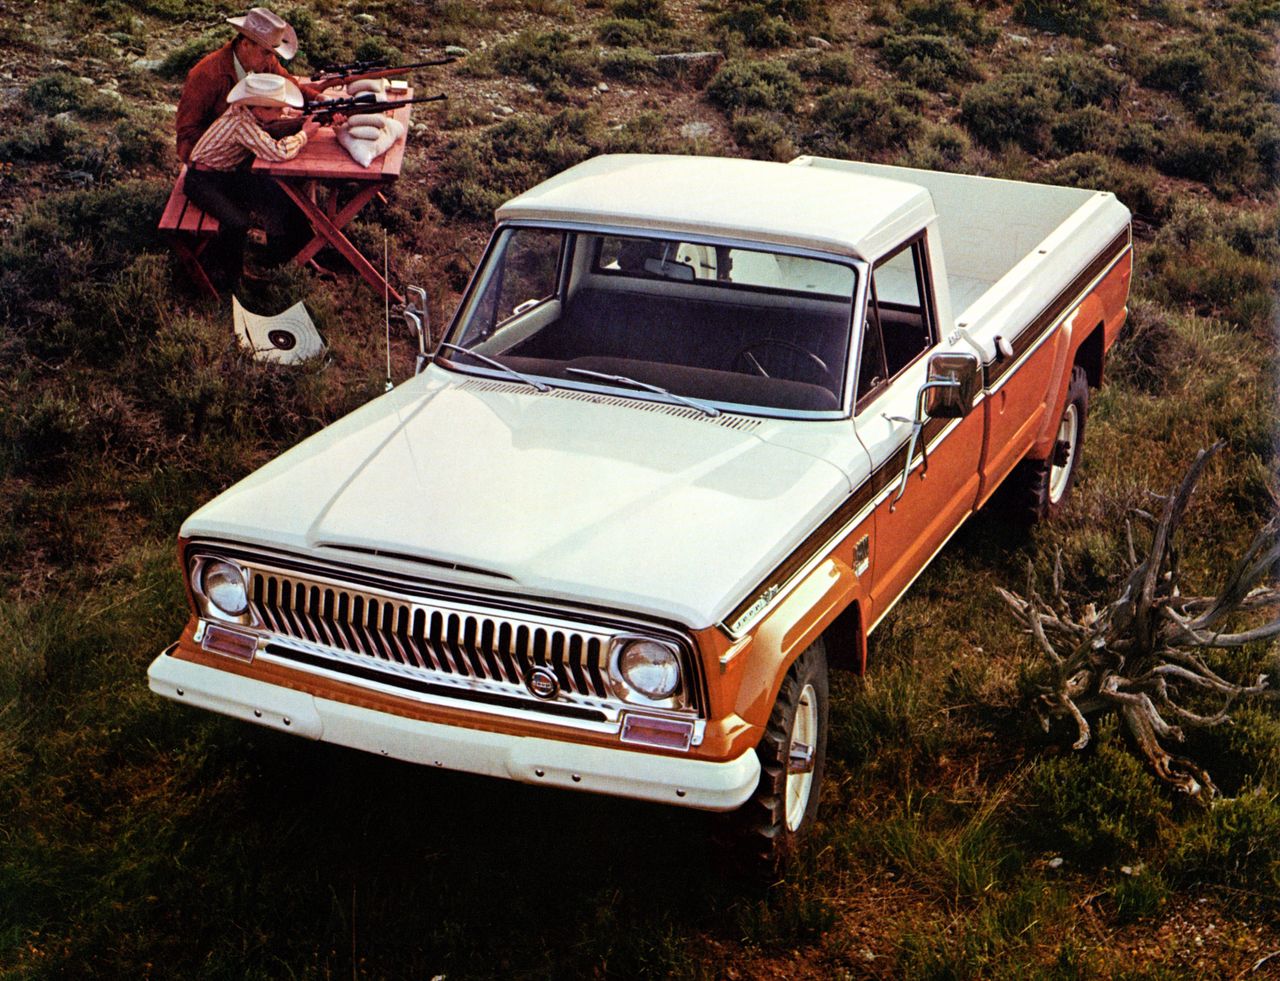 W latach 70. nie było już nazwy Gladiator, a samochód dość mocno zmienił wygląd. Na zdjęciu duży Jeep J4000, co oznaczało przynależność do serii J. Inne nazwy to Pickup lub Truck.